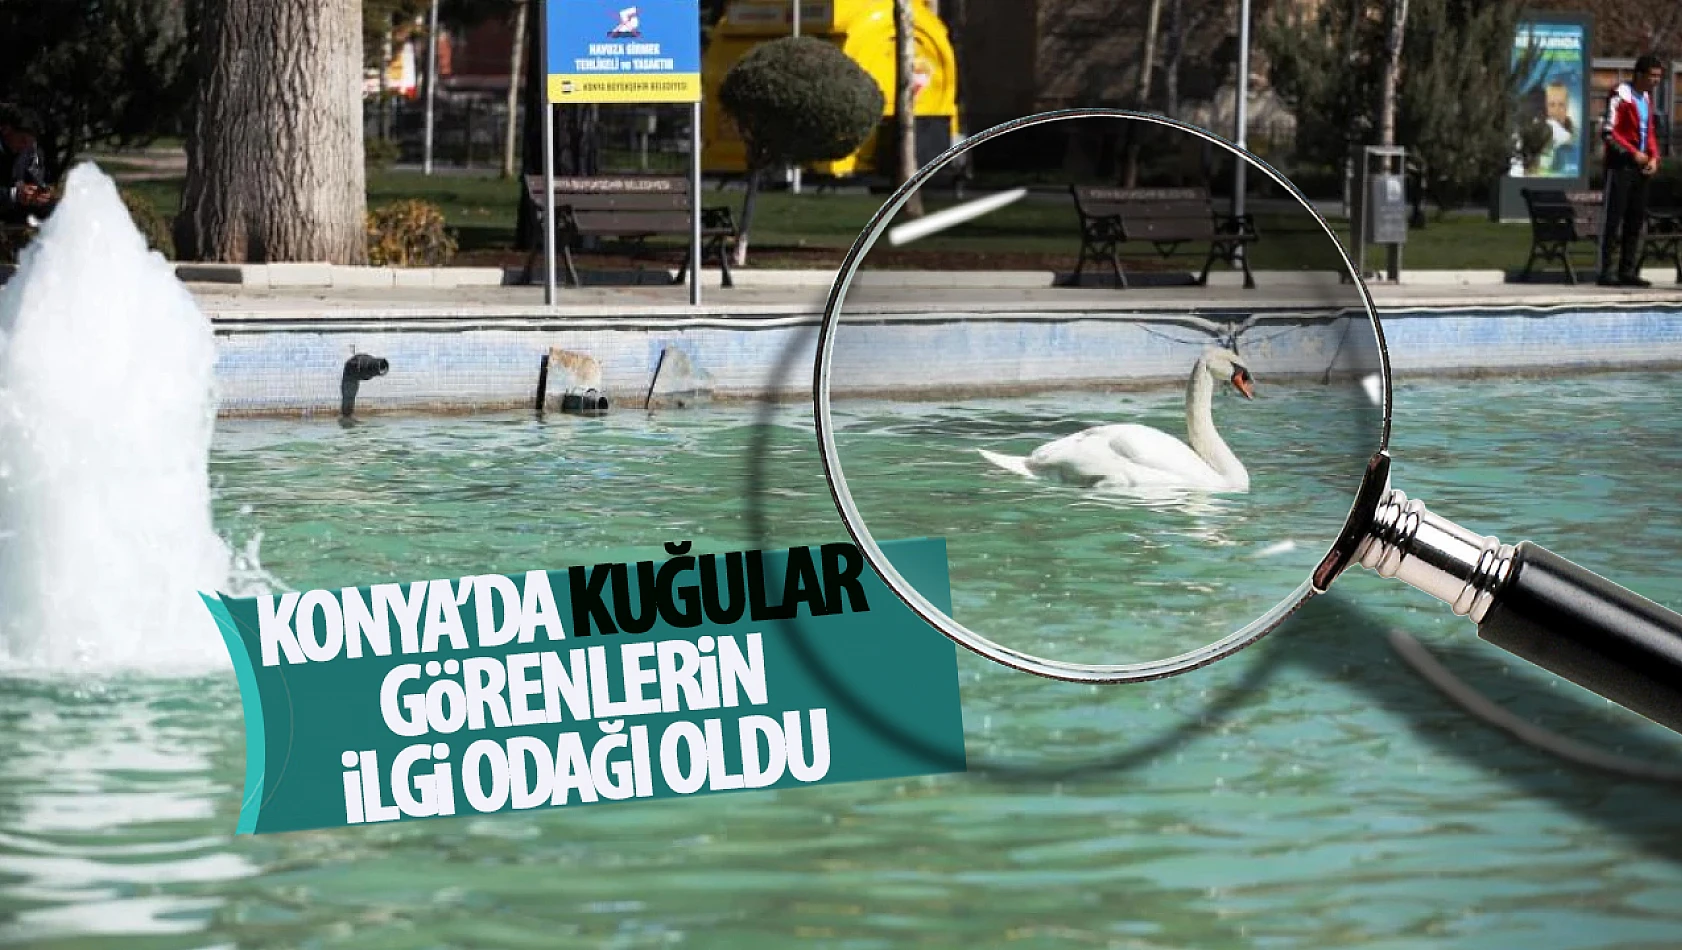 Kuğular Konya'da vatandaşların ilgi odağı oldu!